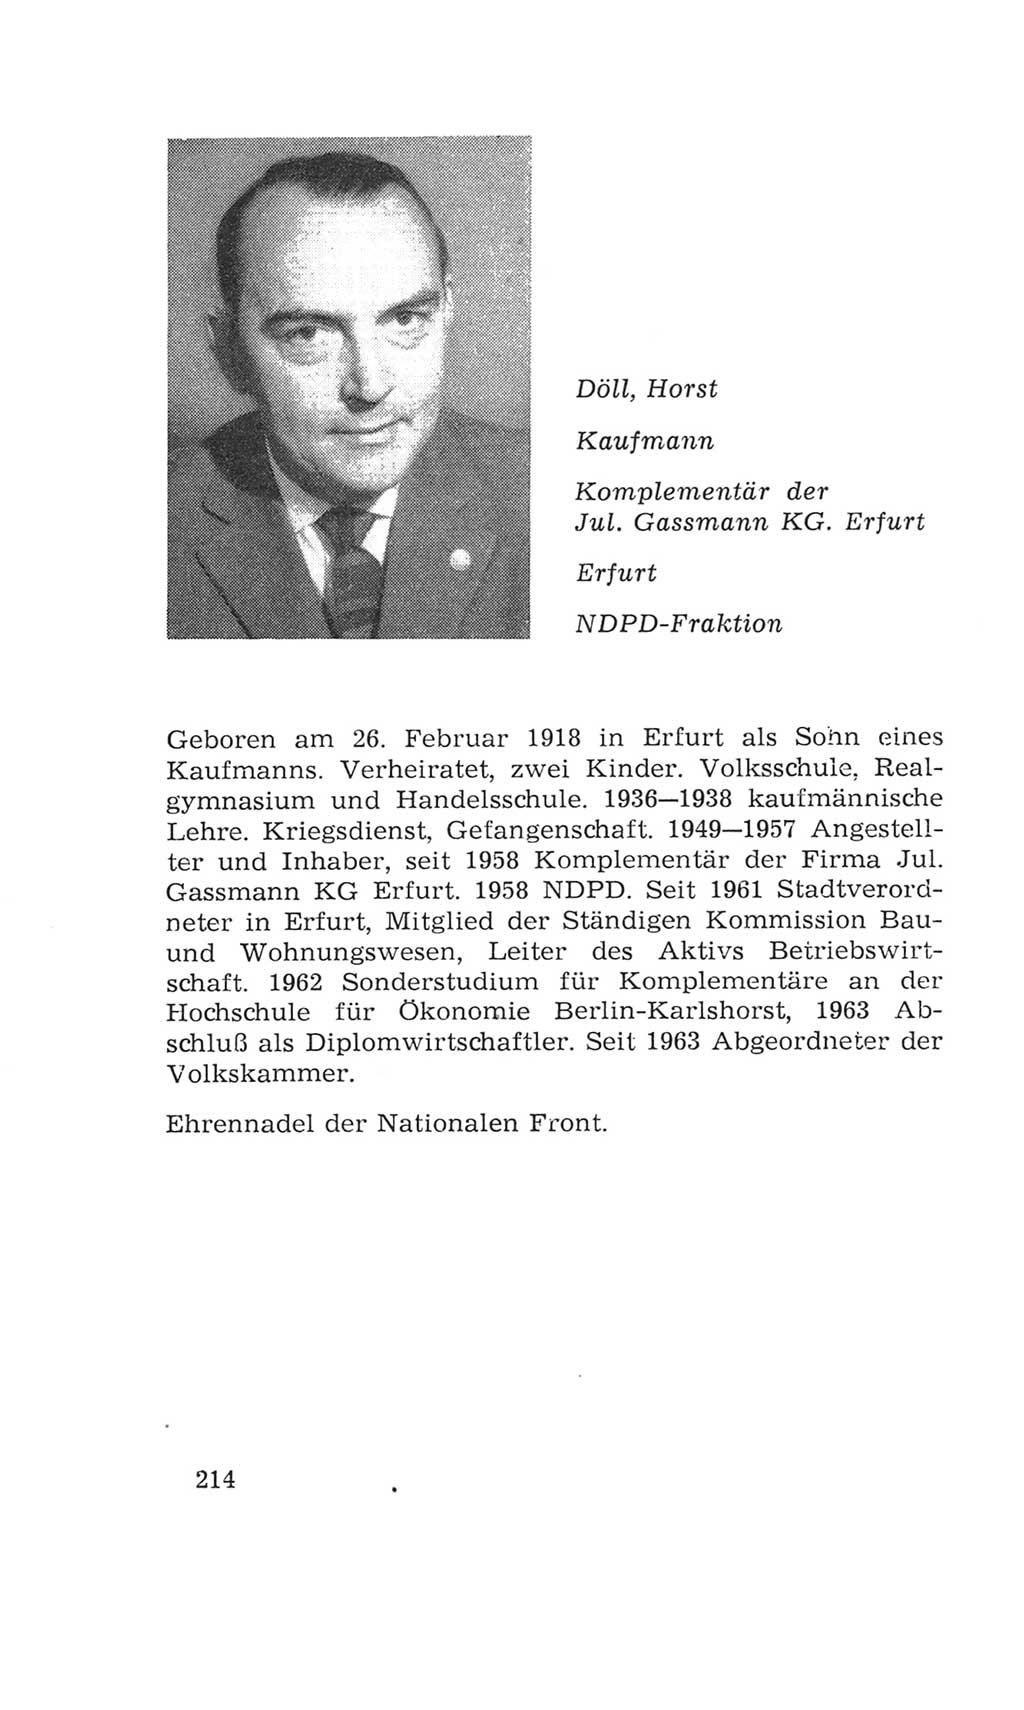 Volkskammer (VK) der Deutschen Demokratischen Republik (DDR), 4. Wahlperiode 1963-1967, Seite 214 (VK. DDR 4. WP. 1963-1967, S. 214)